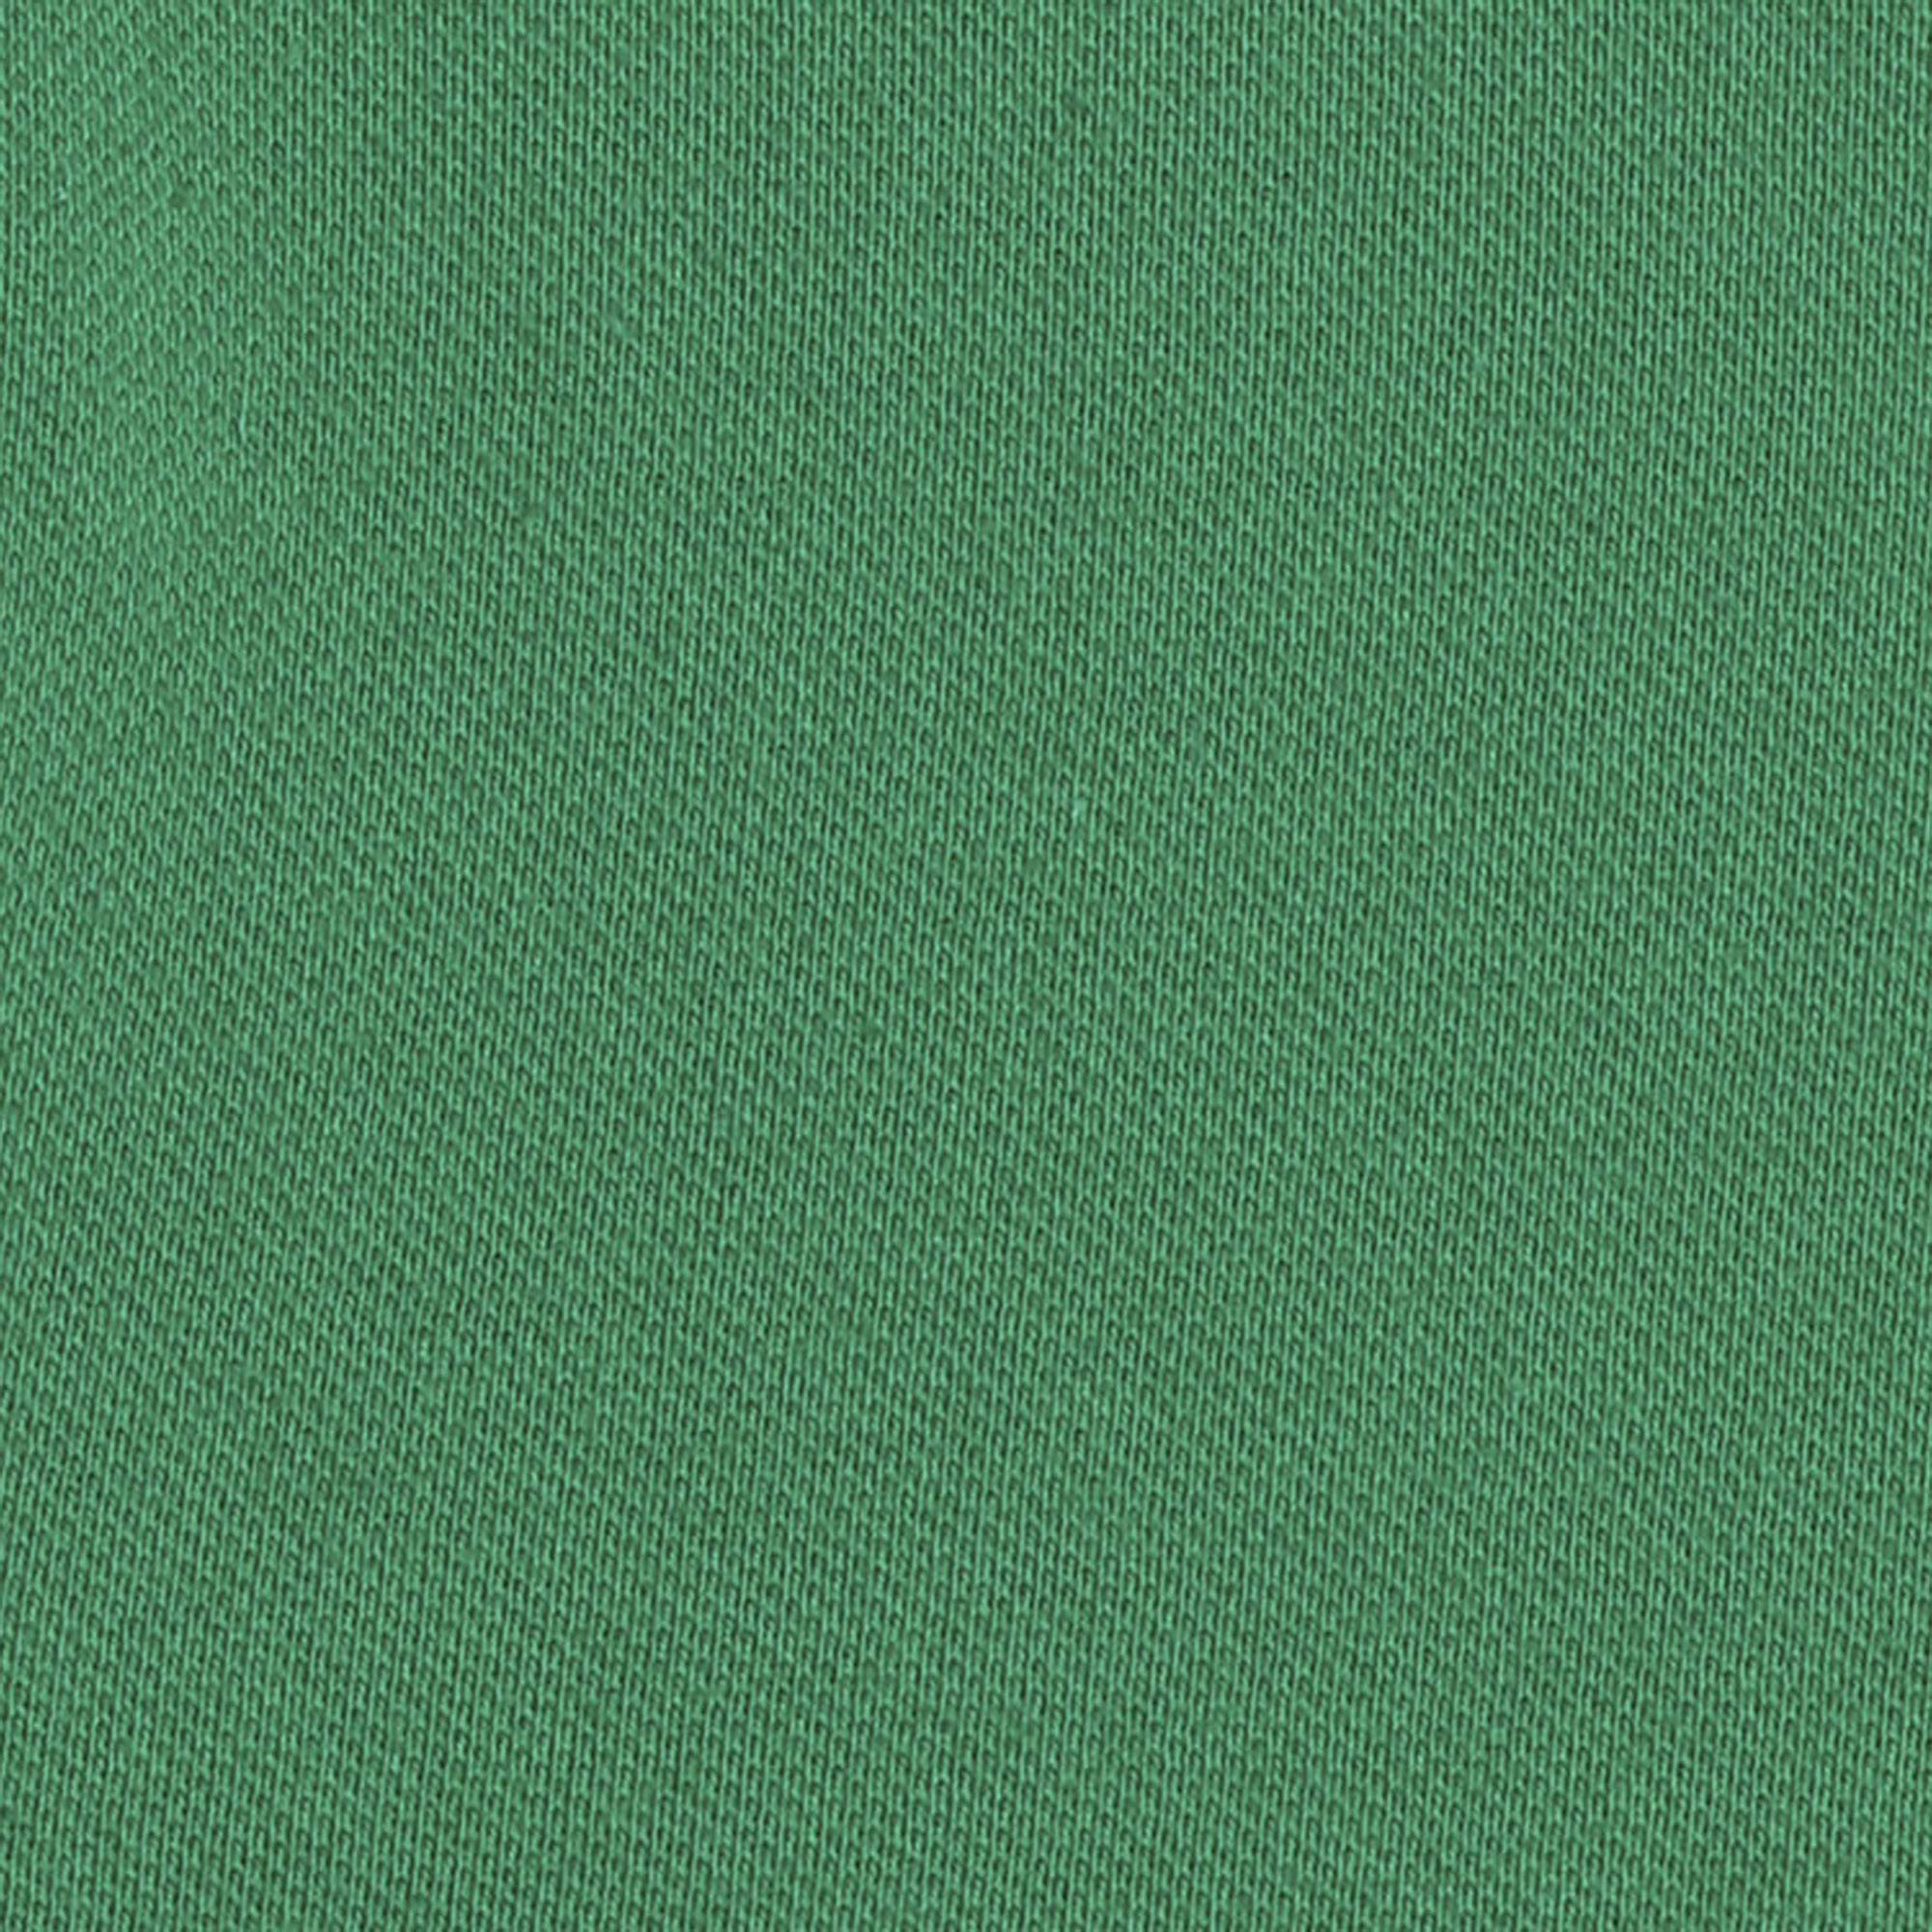 Женское поло AMADEY  с коротким рукавом S зеленое, цвет зеленый, размер S - фото 5